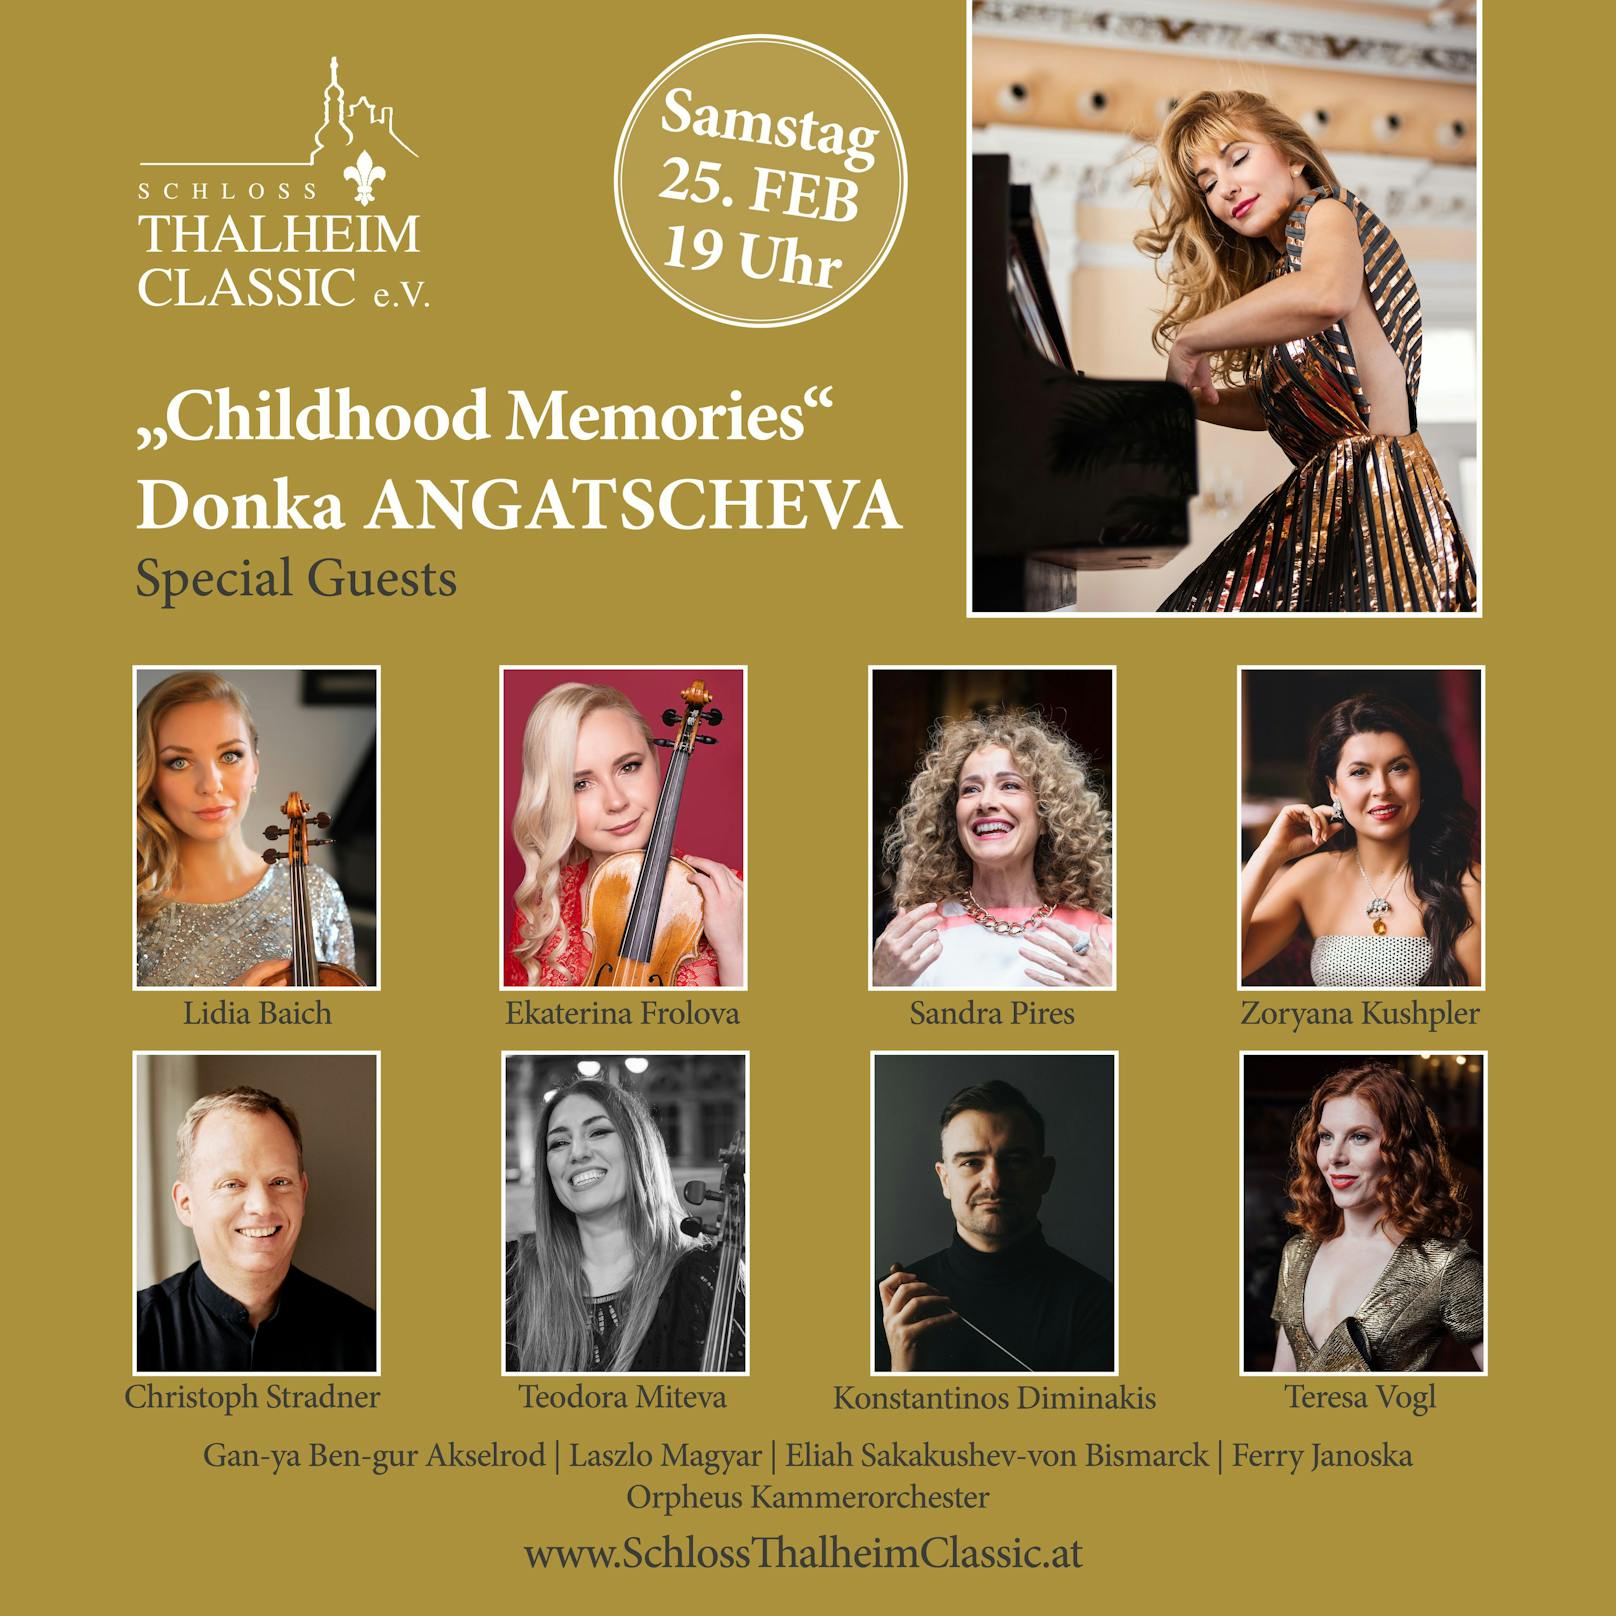 Konzertankündigung für Donka Angatscheva im Schloss Thalheim